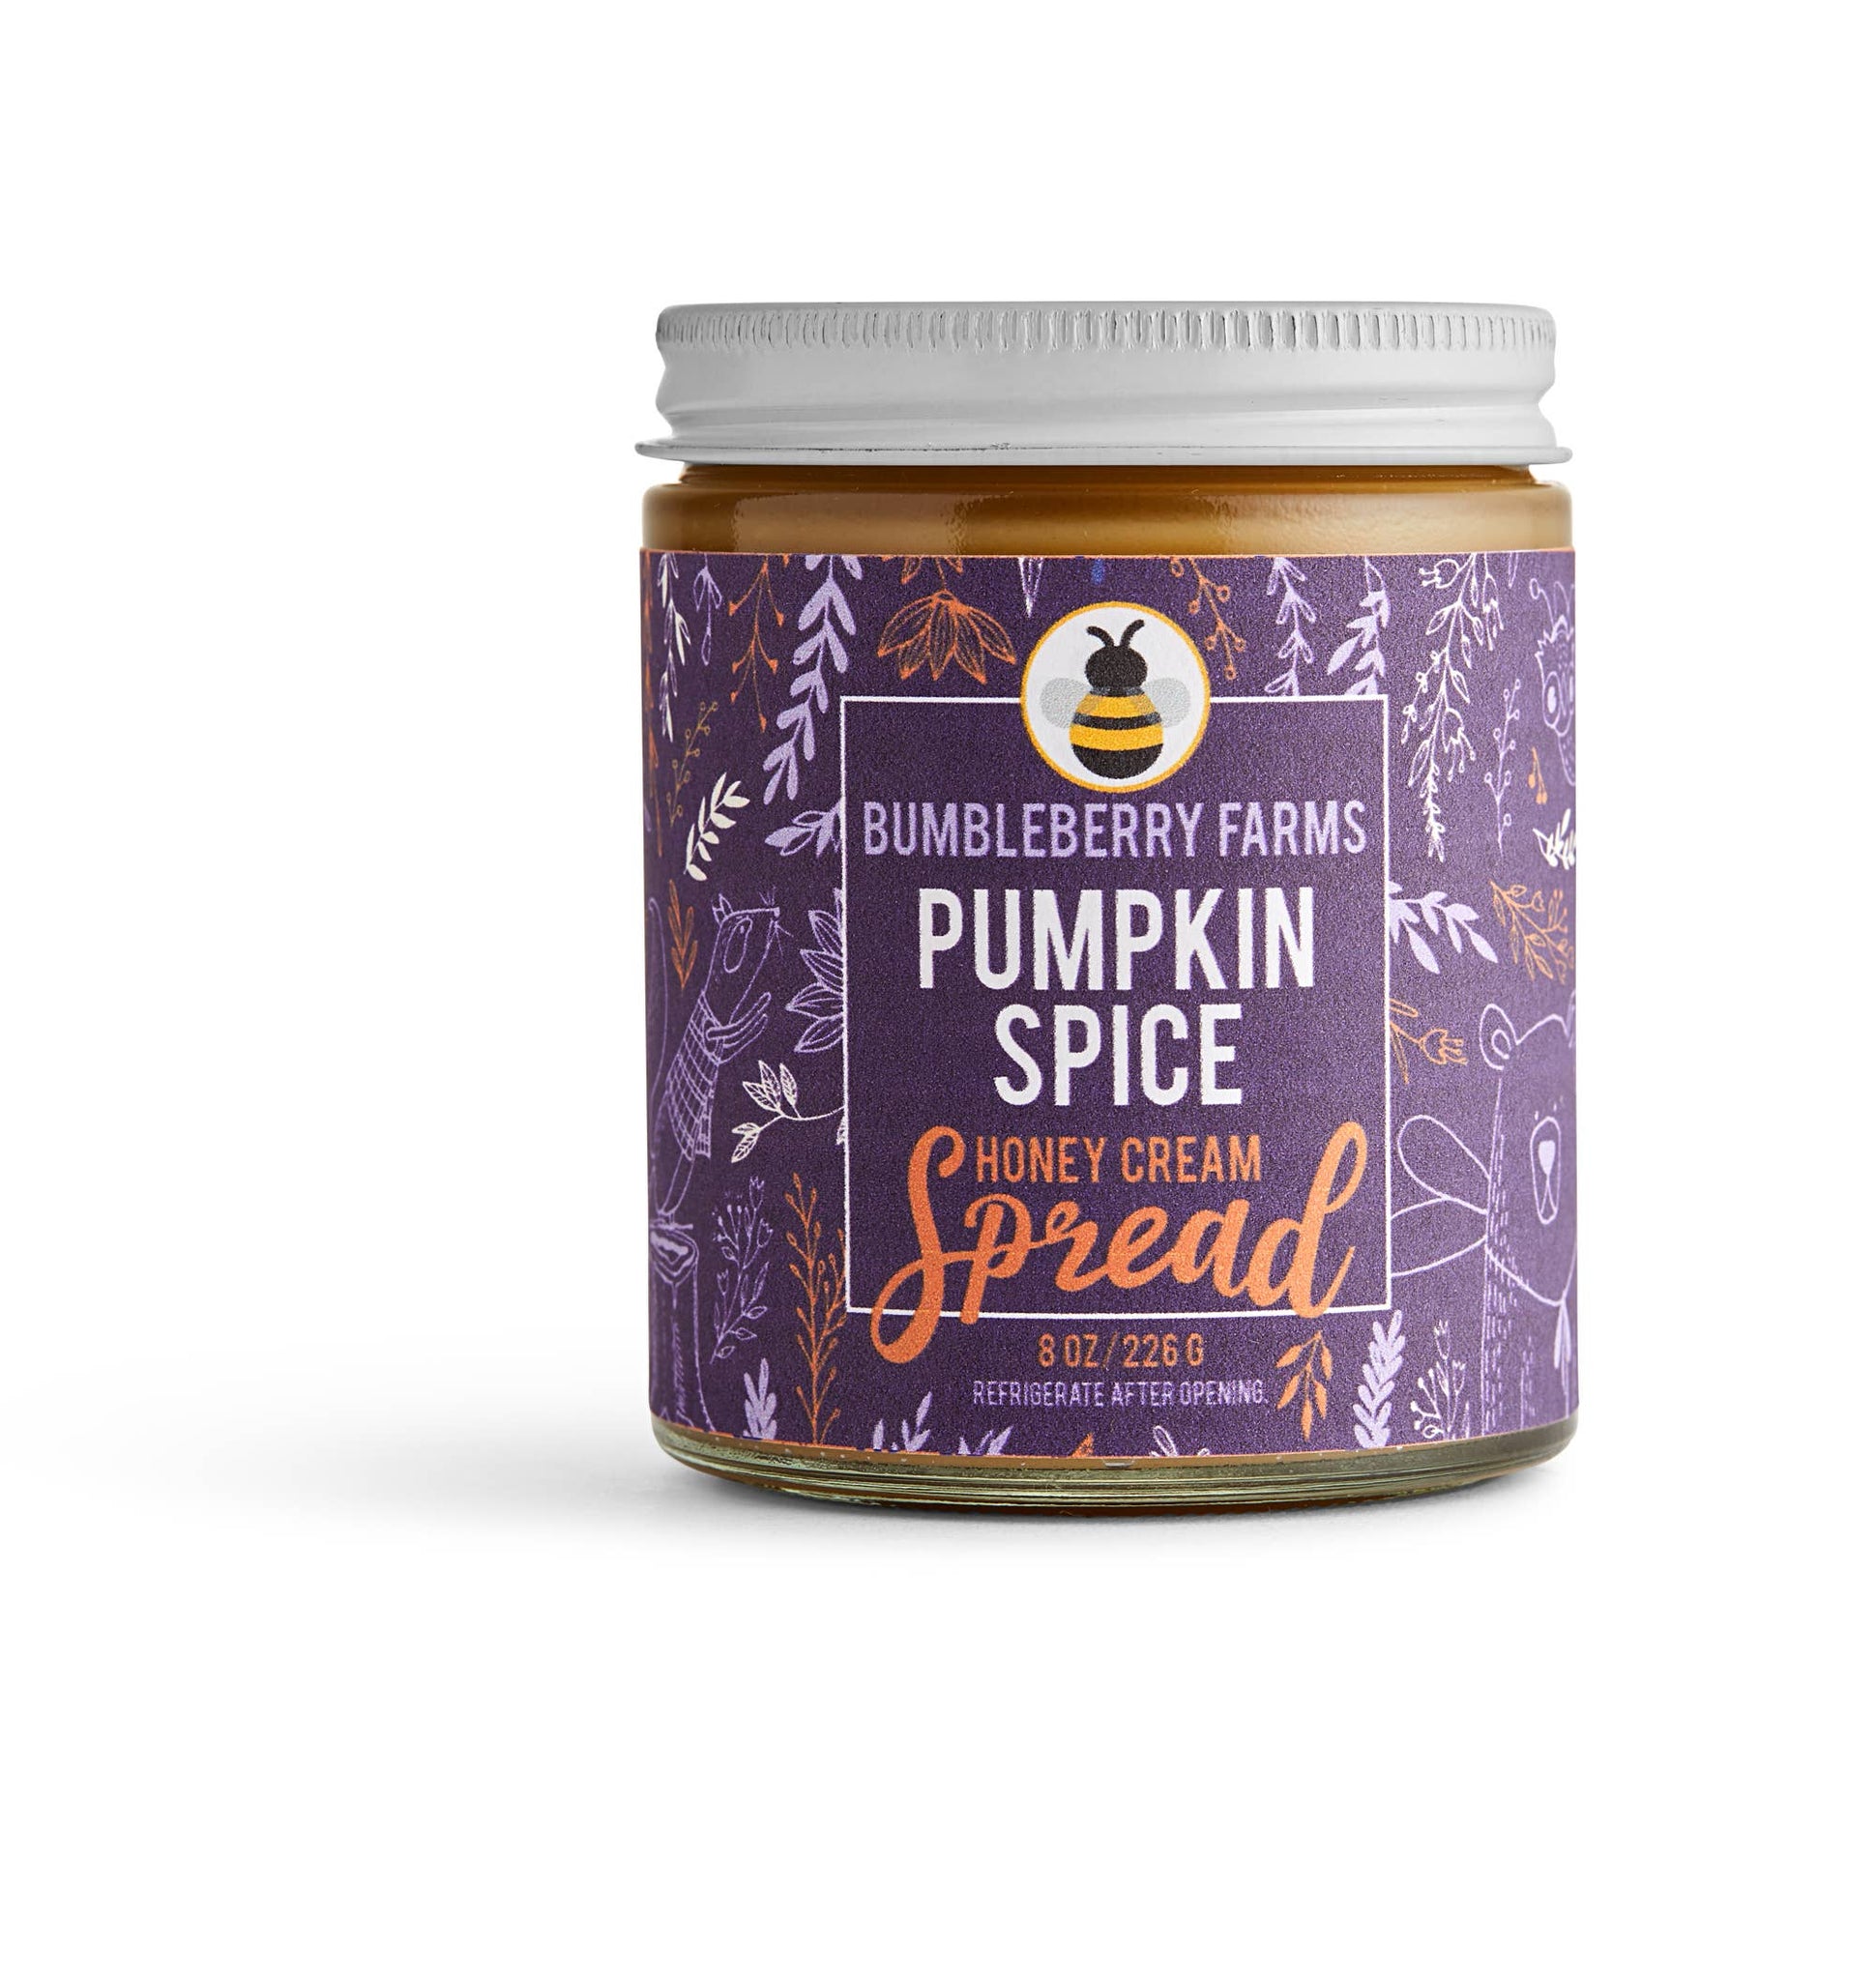 It's Back! Our 2020 Sofi Winner: Pumpkin Spice Honey Spread